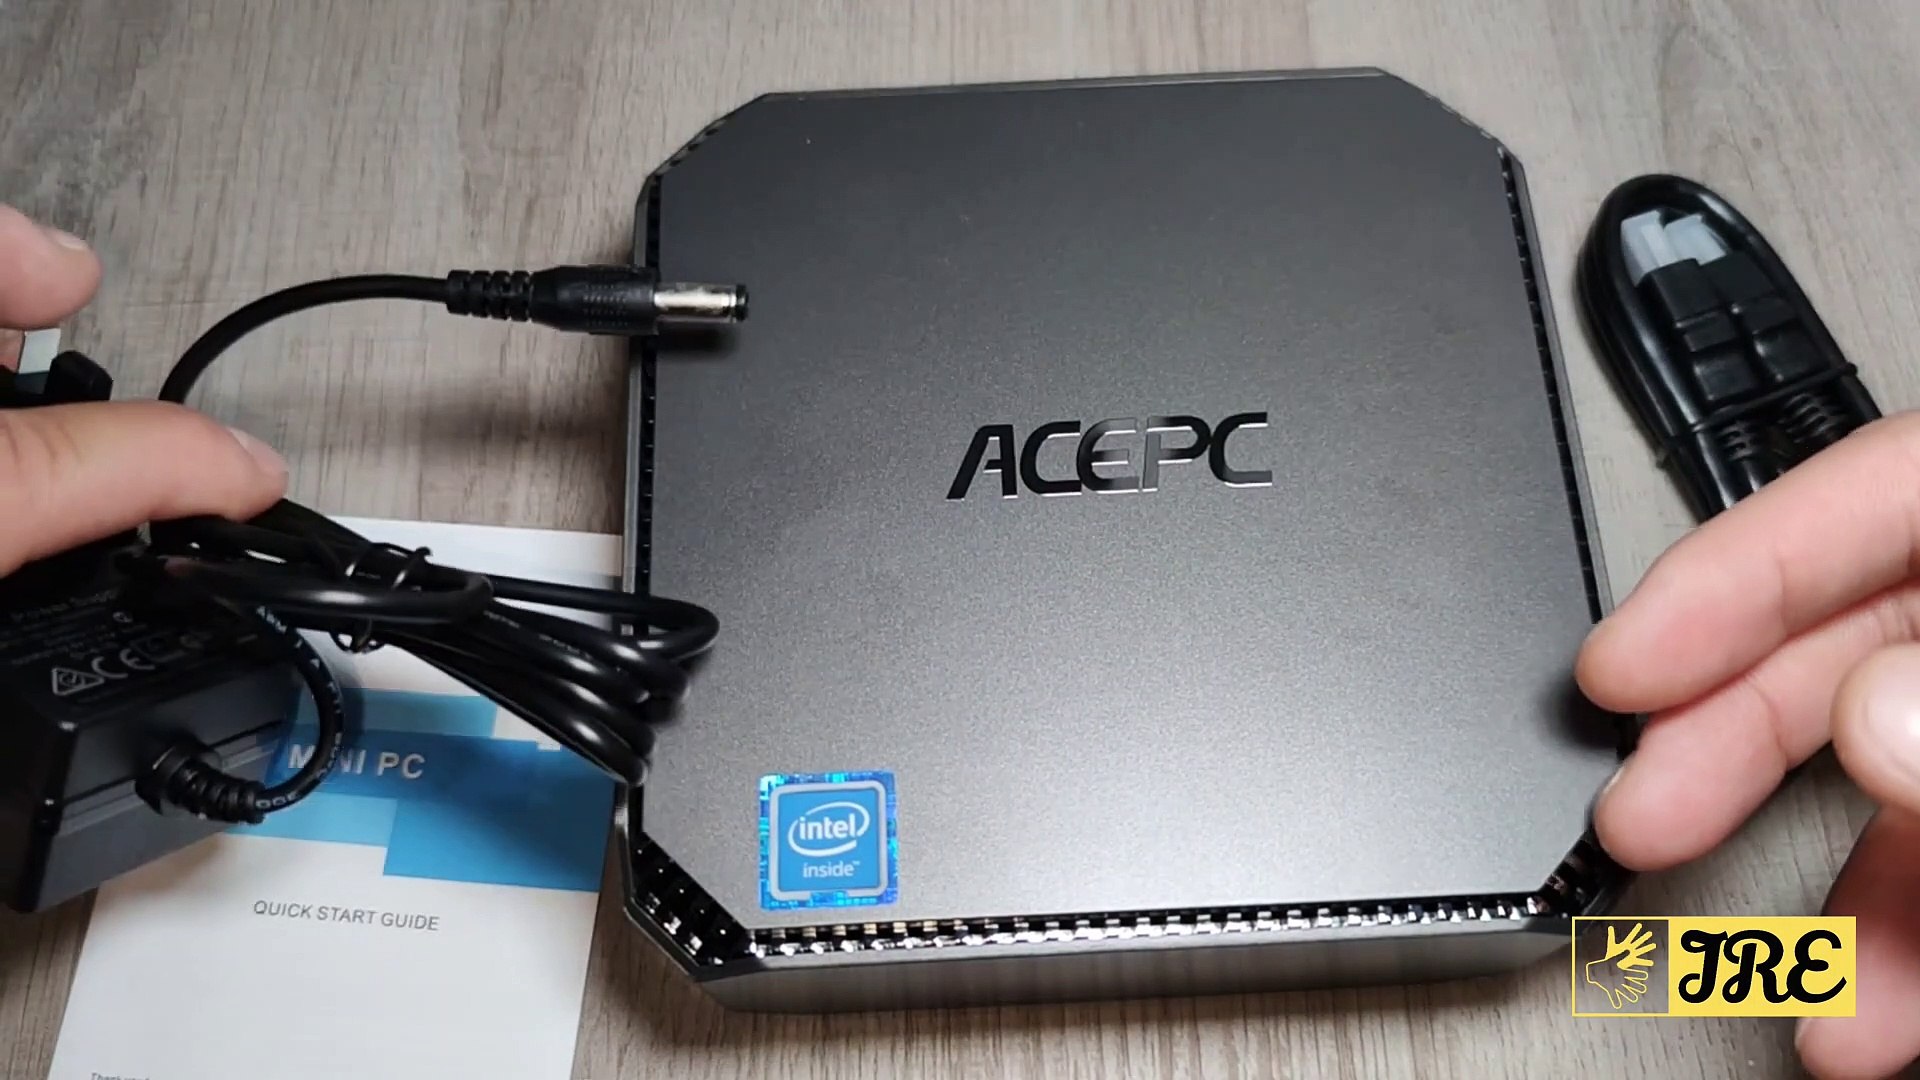 ACEPC Mini PC AK2 Windows 10 Pro (Review) - video Dailymotion